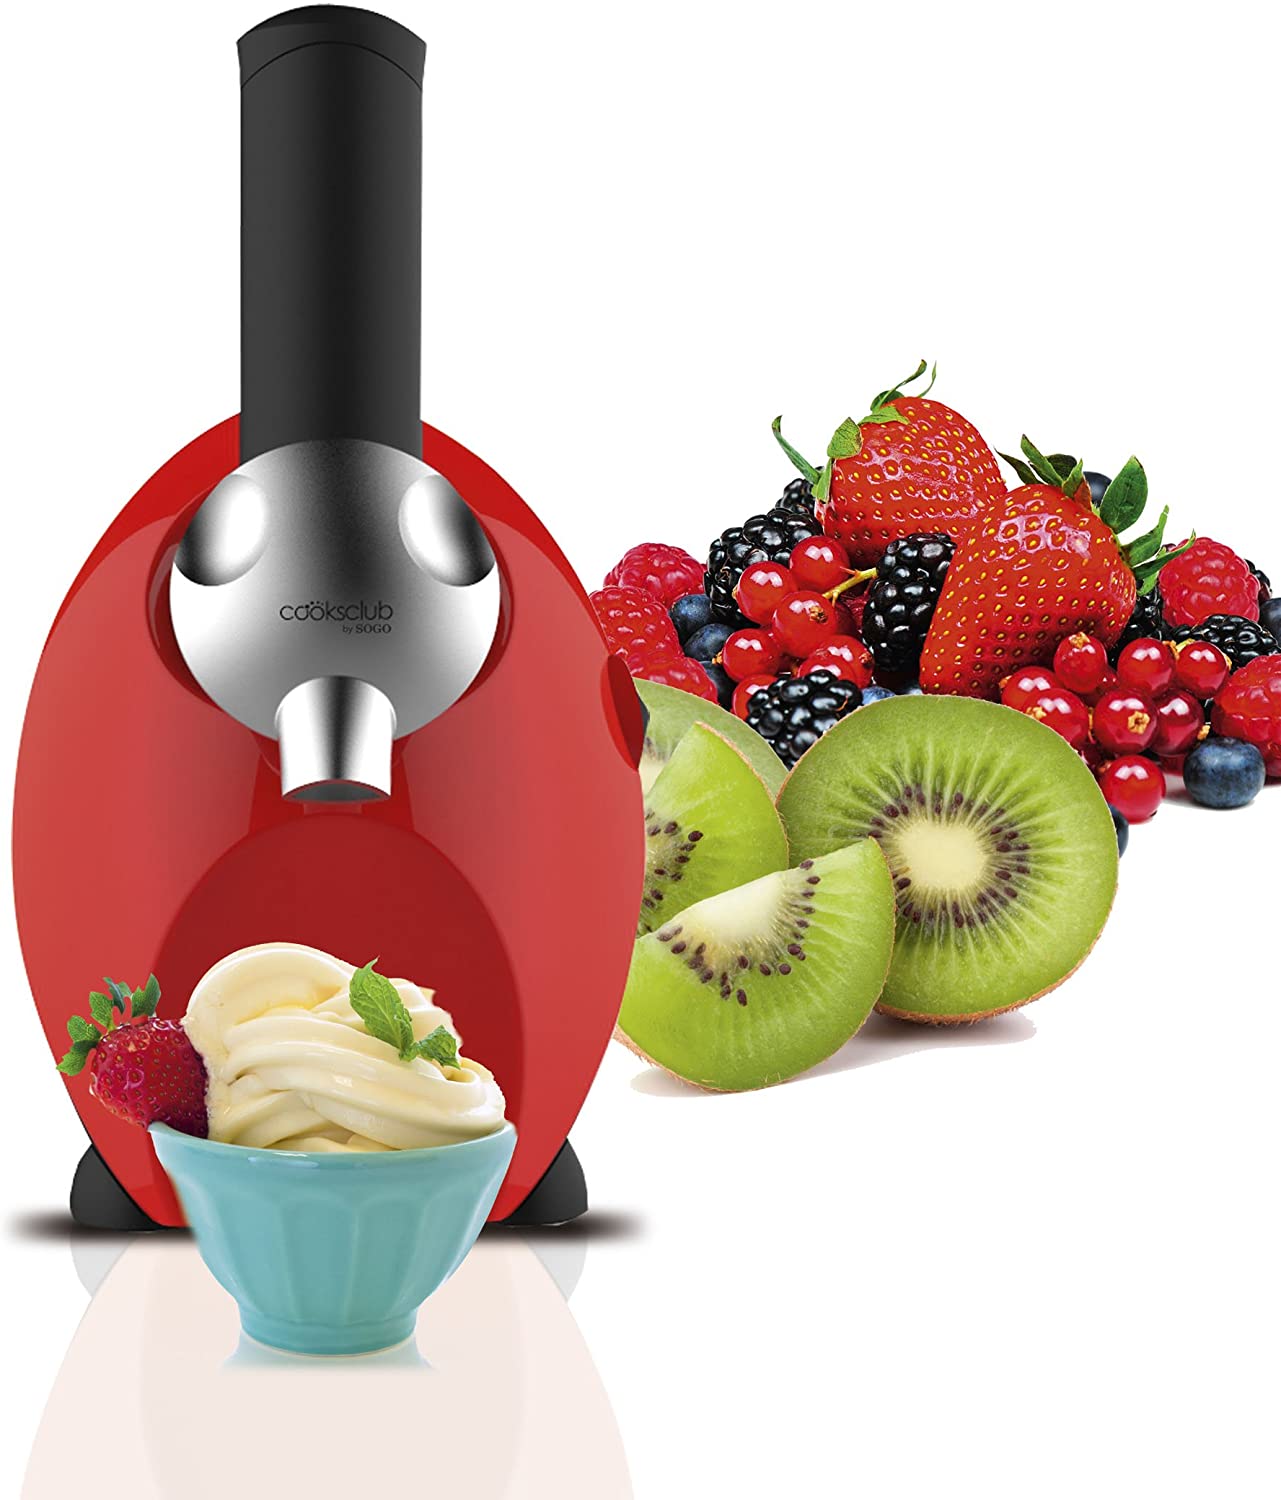 Sogo FDM-SS-5245 Frozen Fruit Ice Cream Maker, 150 W, Red/Black